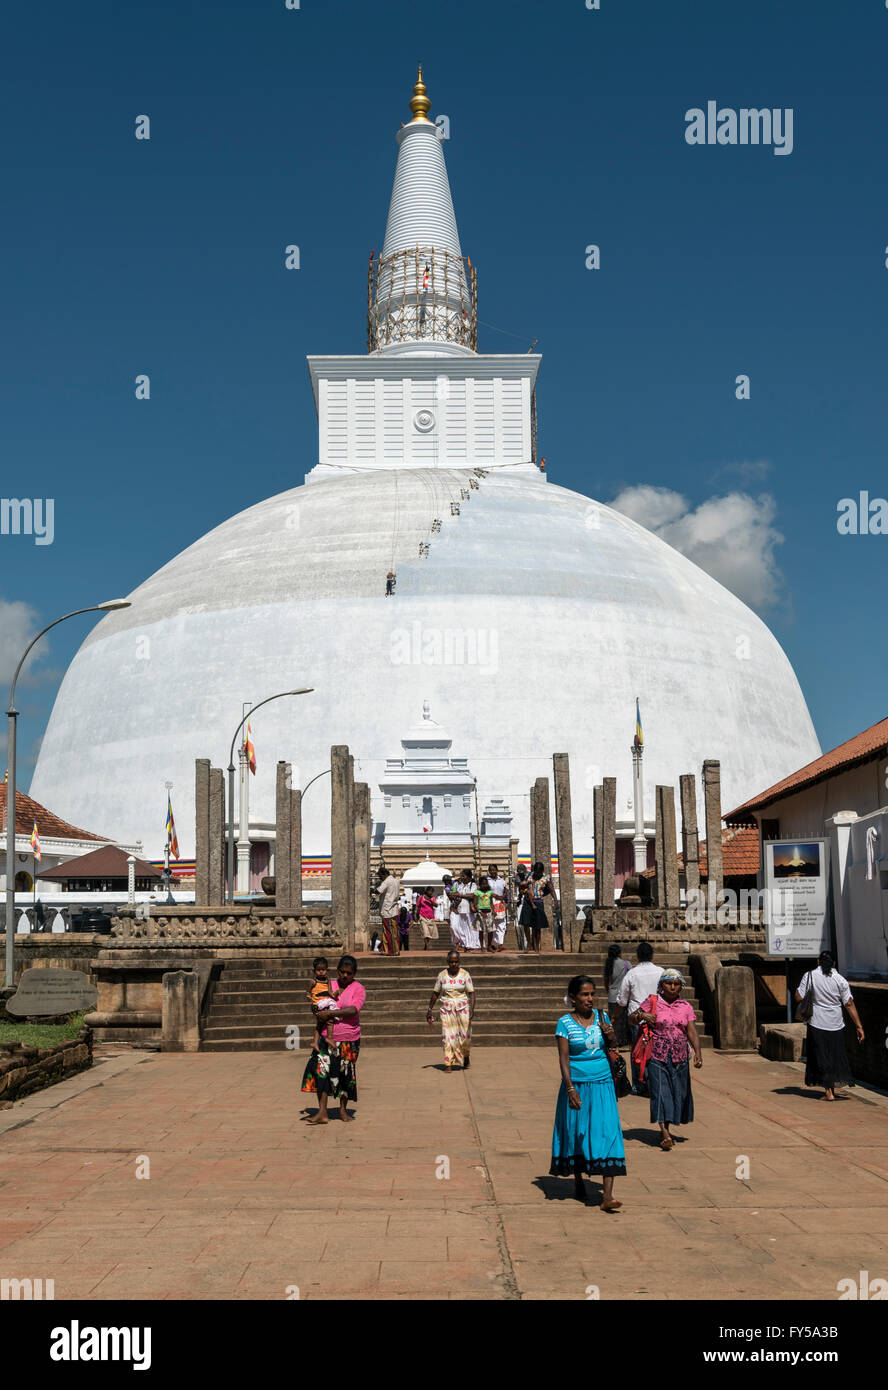 Visitors at Ruwanwelisaya or Ruwanweli Maha Seya Stupa, Anuradhapura, Sri Lanka Stock Photo